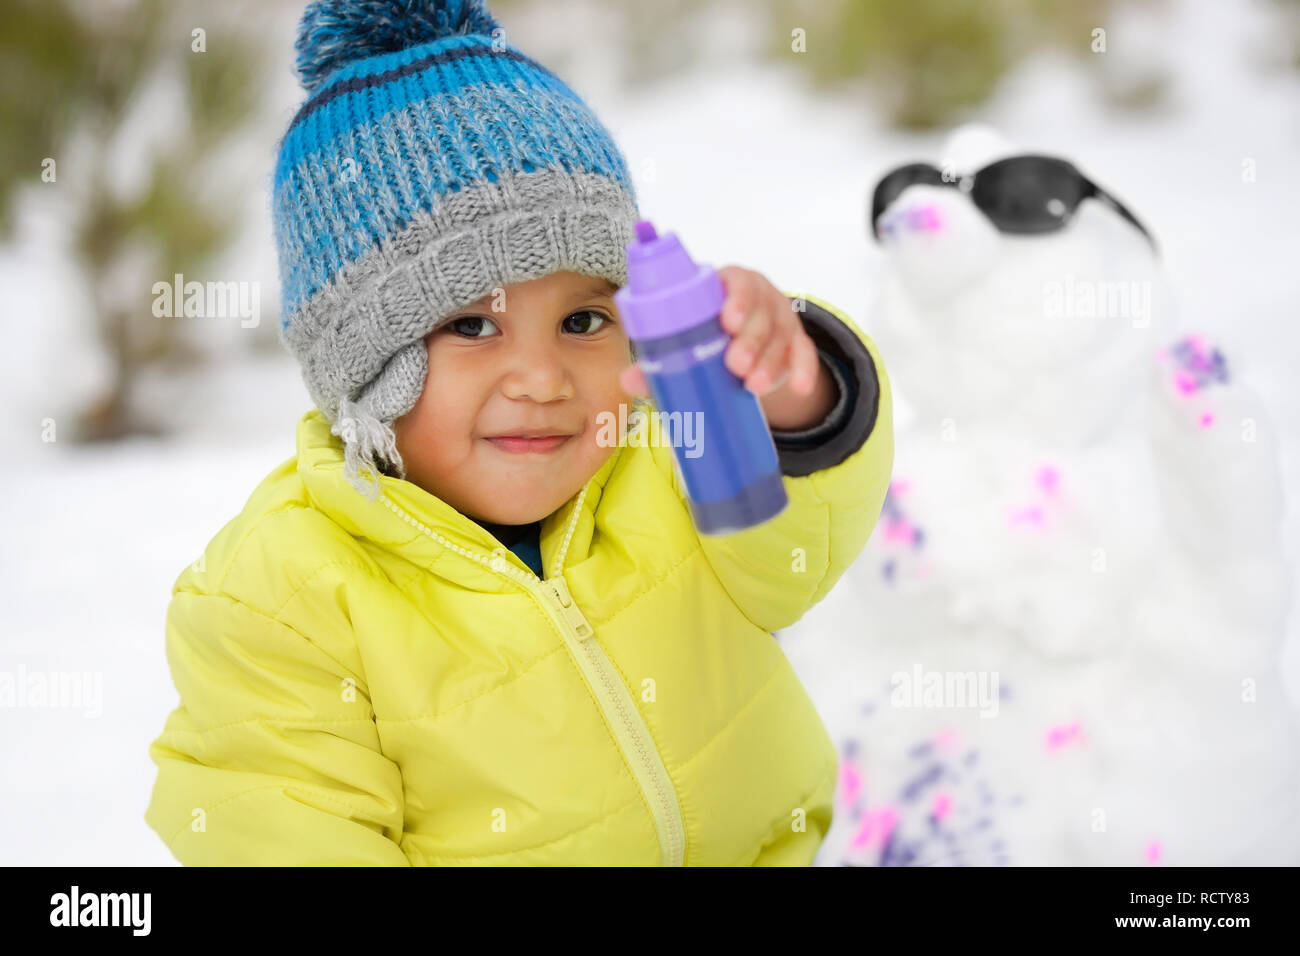 Cute Hispanic junge im Winter Kleidung spielen mit Farben und einen Schneemann in einem schneebedeckten Berg während der Wintersaison. Stockfoto